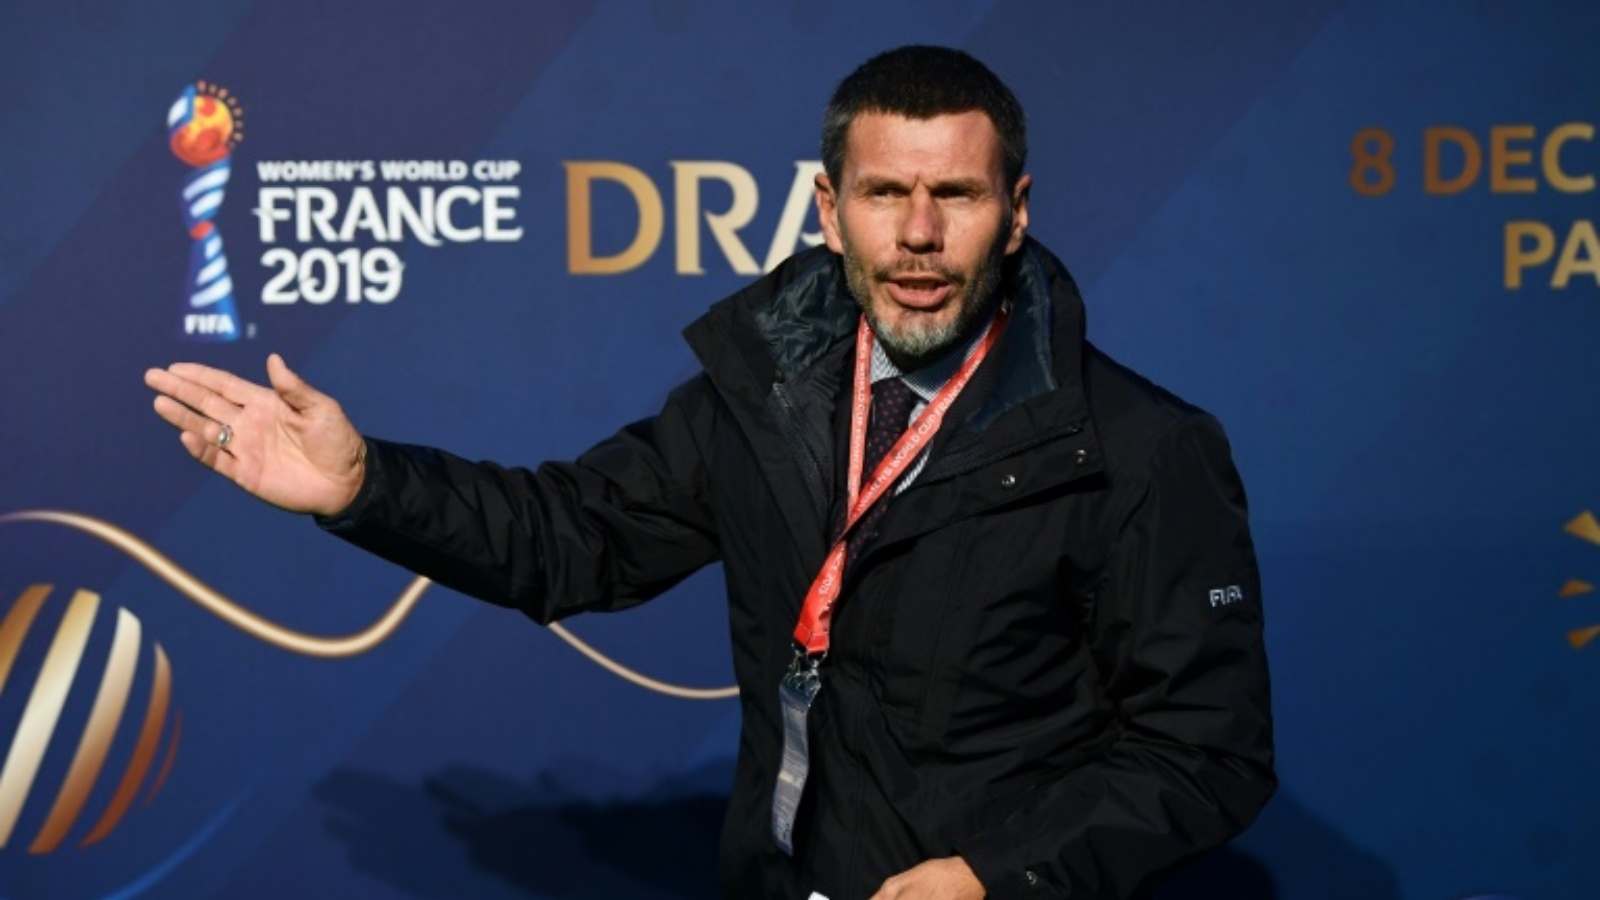 النجم الكرواتي السابق زفونيمير بوبان قبيل قرعة نهائيات كأس العالم 2019 للسيدات في كرة القدم. بولونيي-بيلانور، بالقرب من باريس، في 8 كانون الأول (ديسمبر) 2018